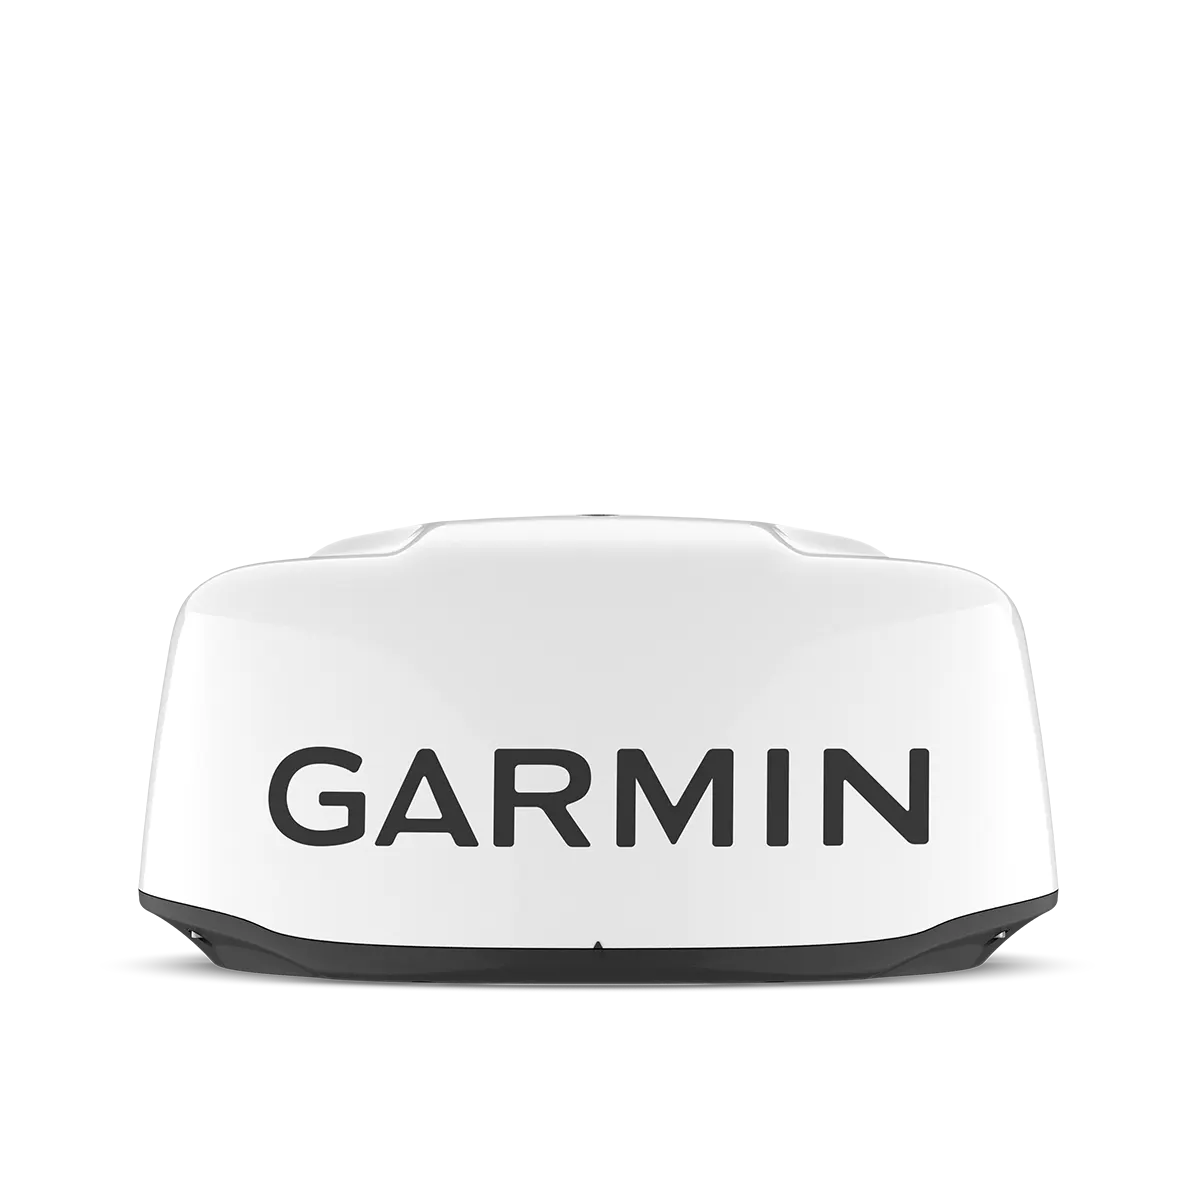 Garmin GMR 18 HD3 Dome Radar